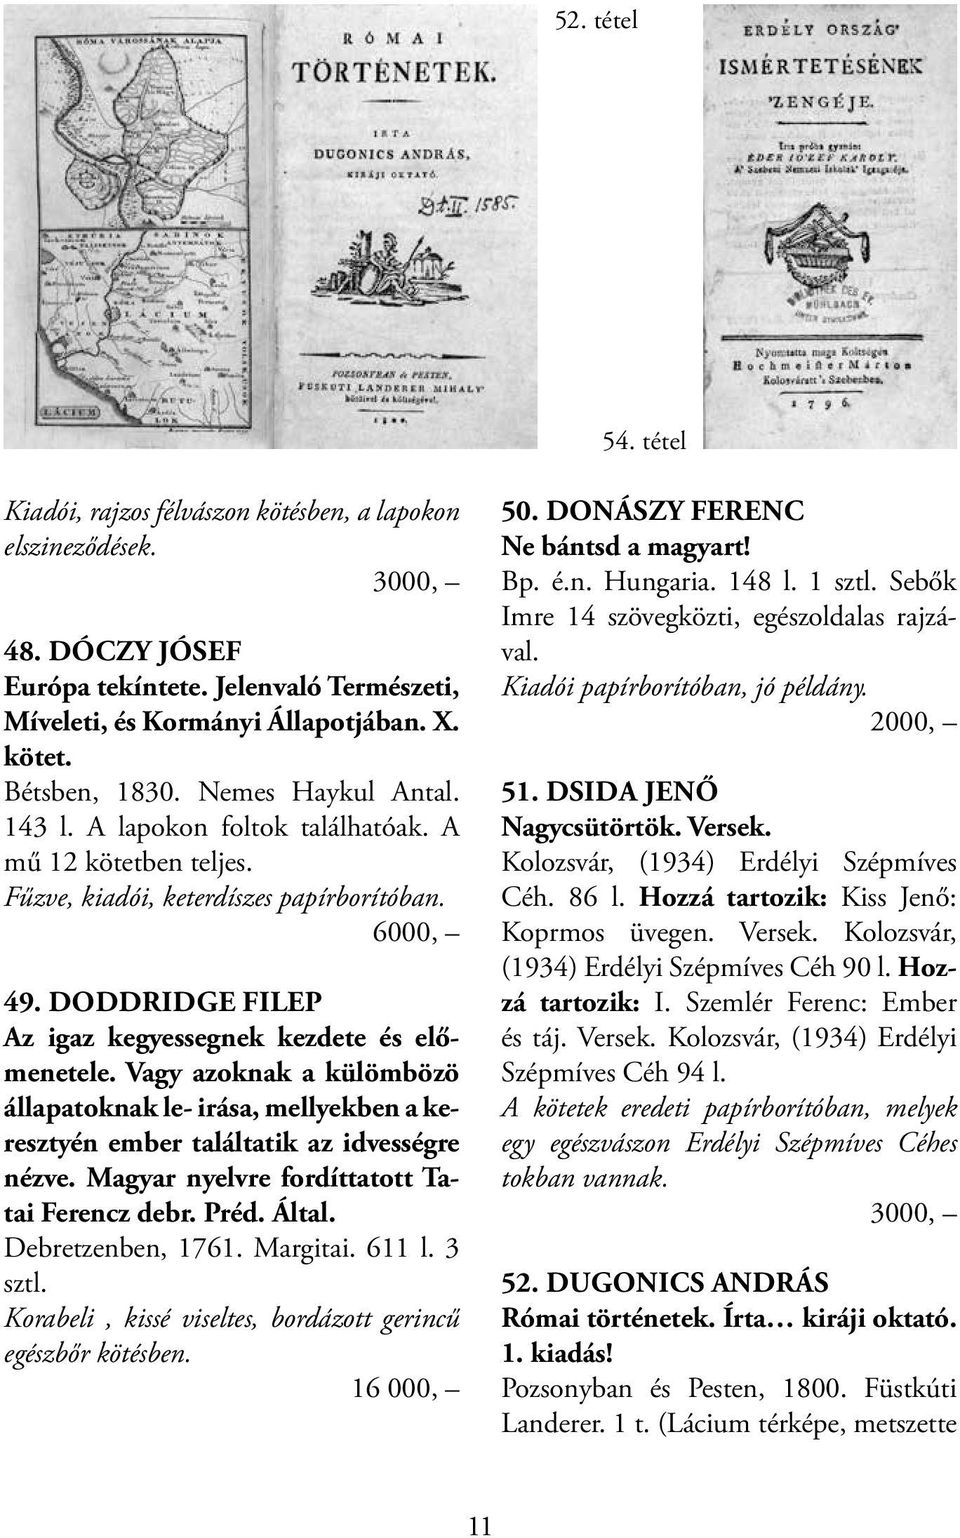 Vagy azoknak a külömbözö állapatoknak le- irása, mellyekben a keresztyén ember találtatik az idvességre nézve. Magyar nyelvre fordíttatott Tatai Ferencz debr. Préd. Által. Debretzenben, 1761.